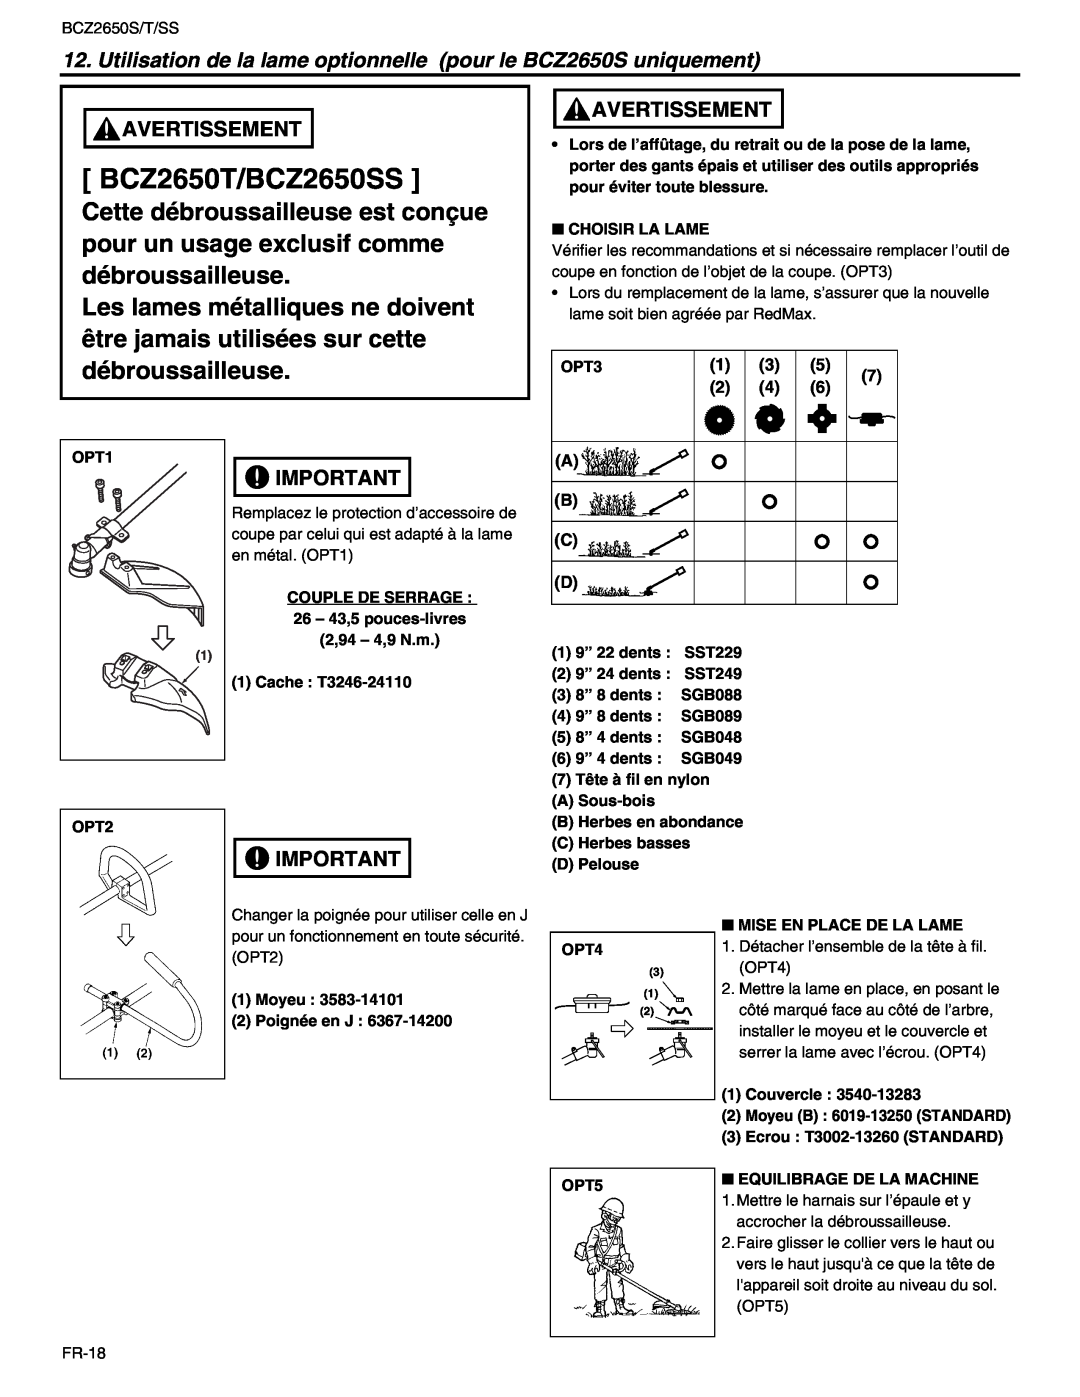 RedMax manual BCZ2650T/BCZ2650SS, Choisir La Lame 